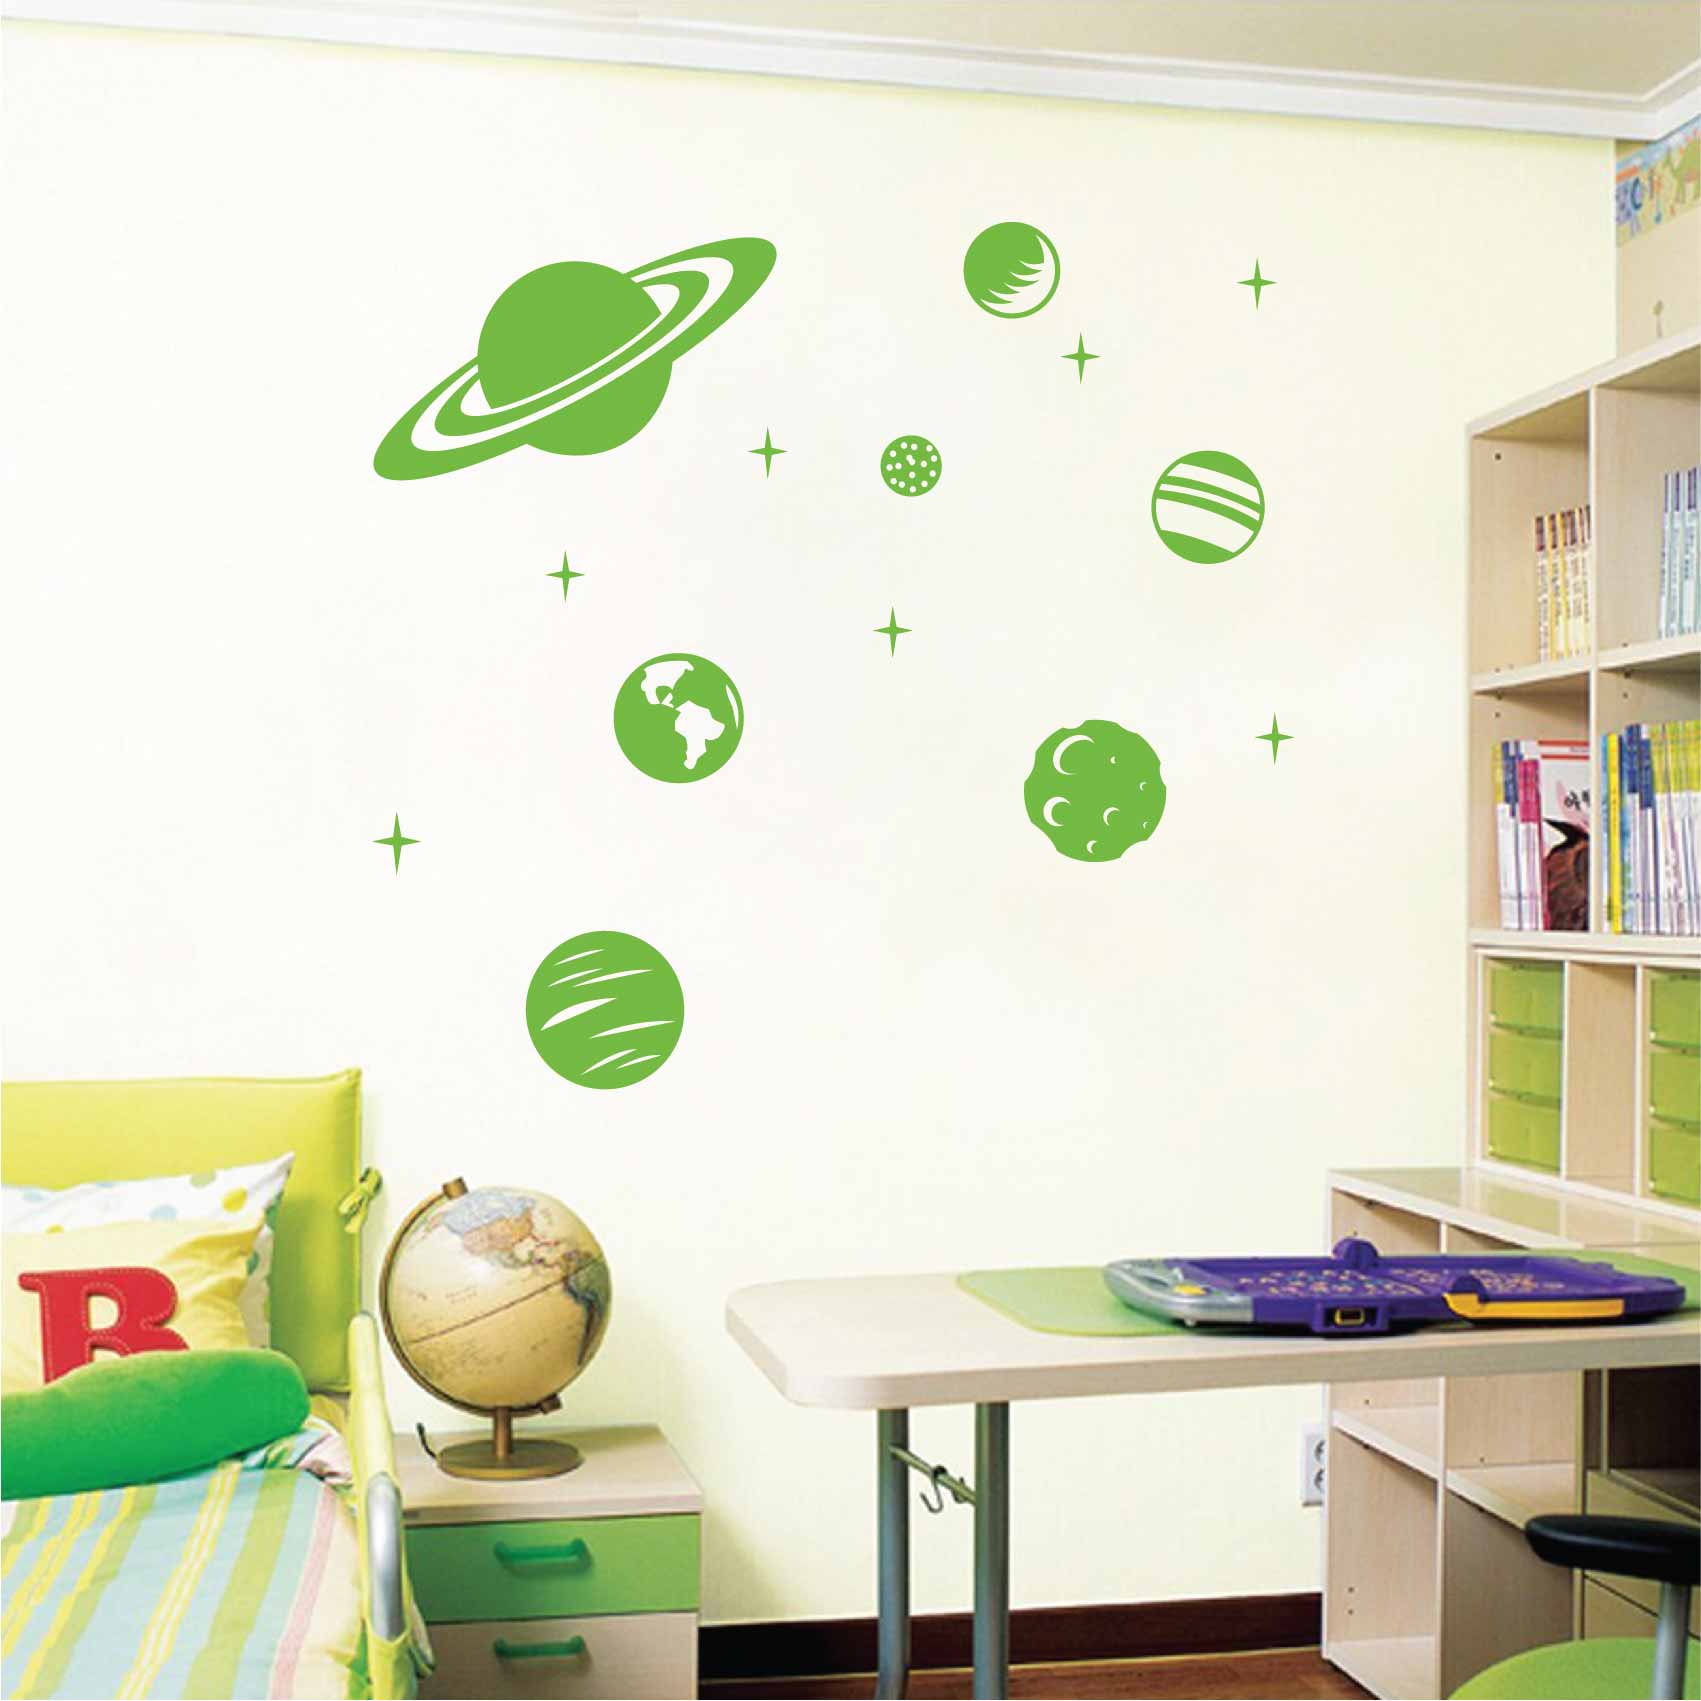 Stickers Muraux Espace Planete Astronaute Autocollants Muraux Mural Stickers  Systeme Solaire Étoiles pour Chambre Enfants Garçon Bébé Pépinière,Multi